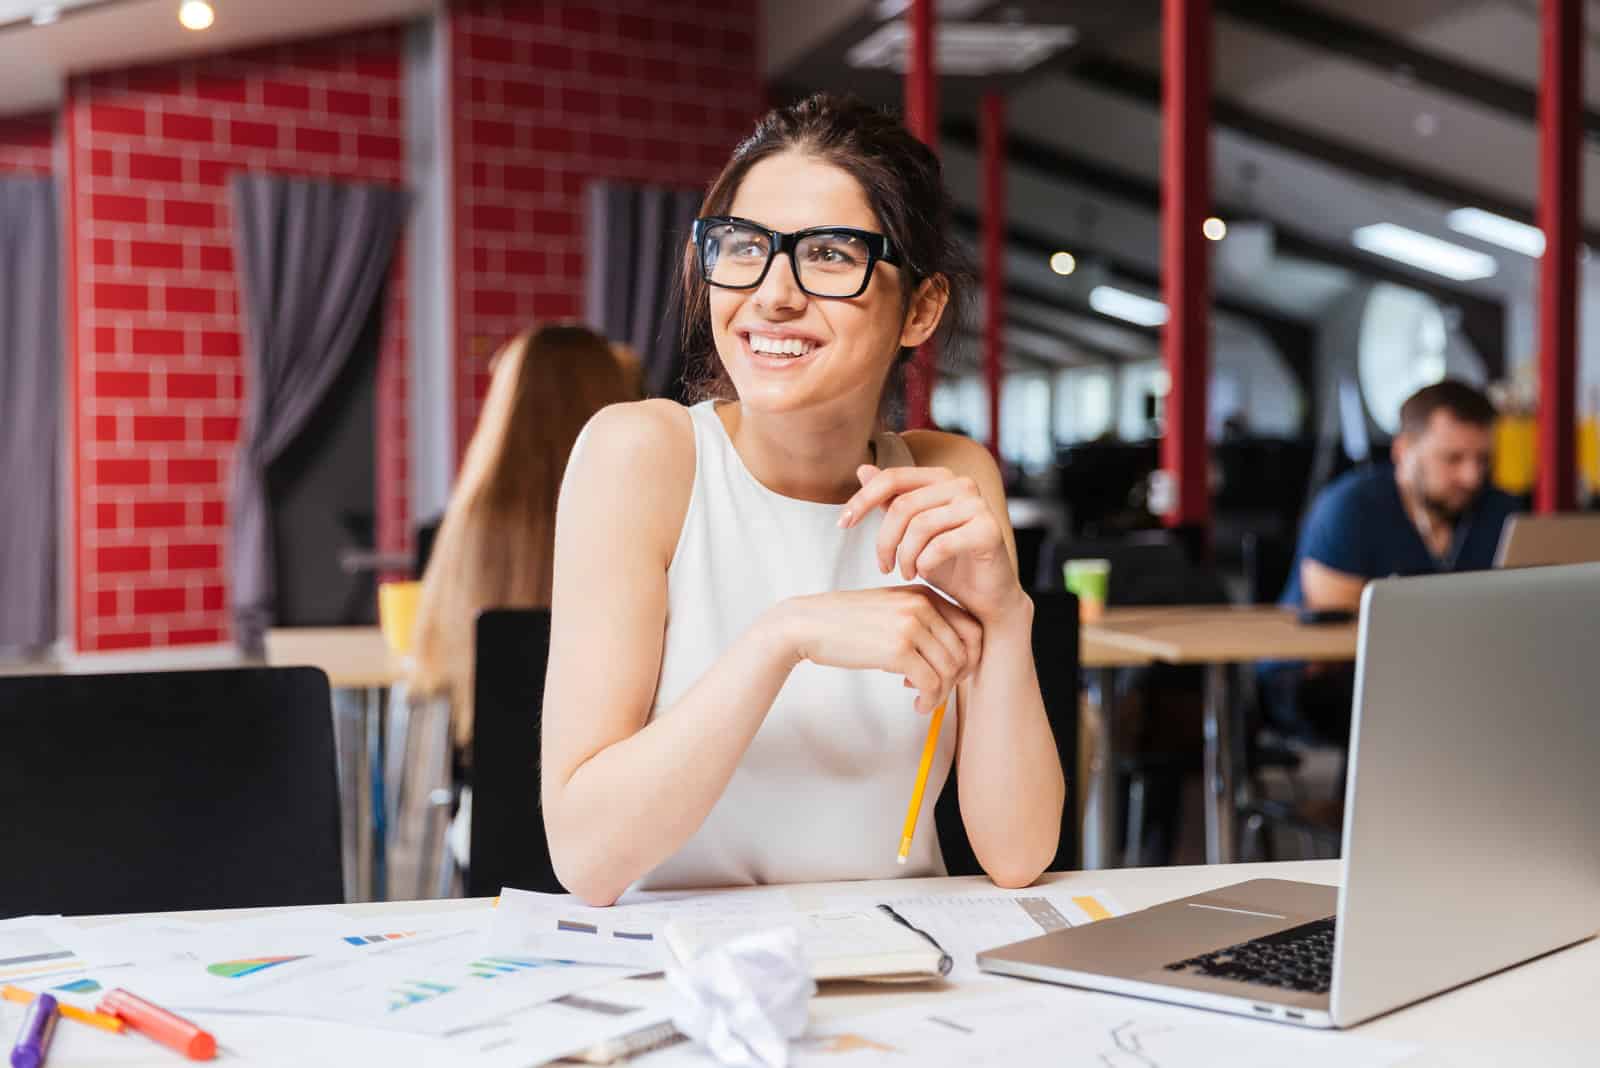 una donna sorridente con gli occhiali siede alla scrivania dell'ufficio